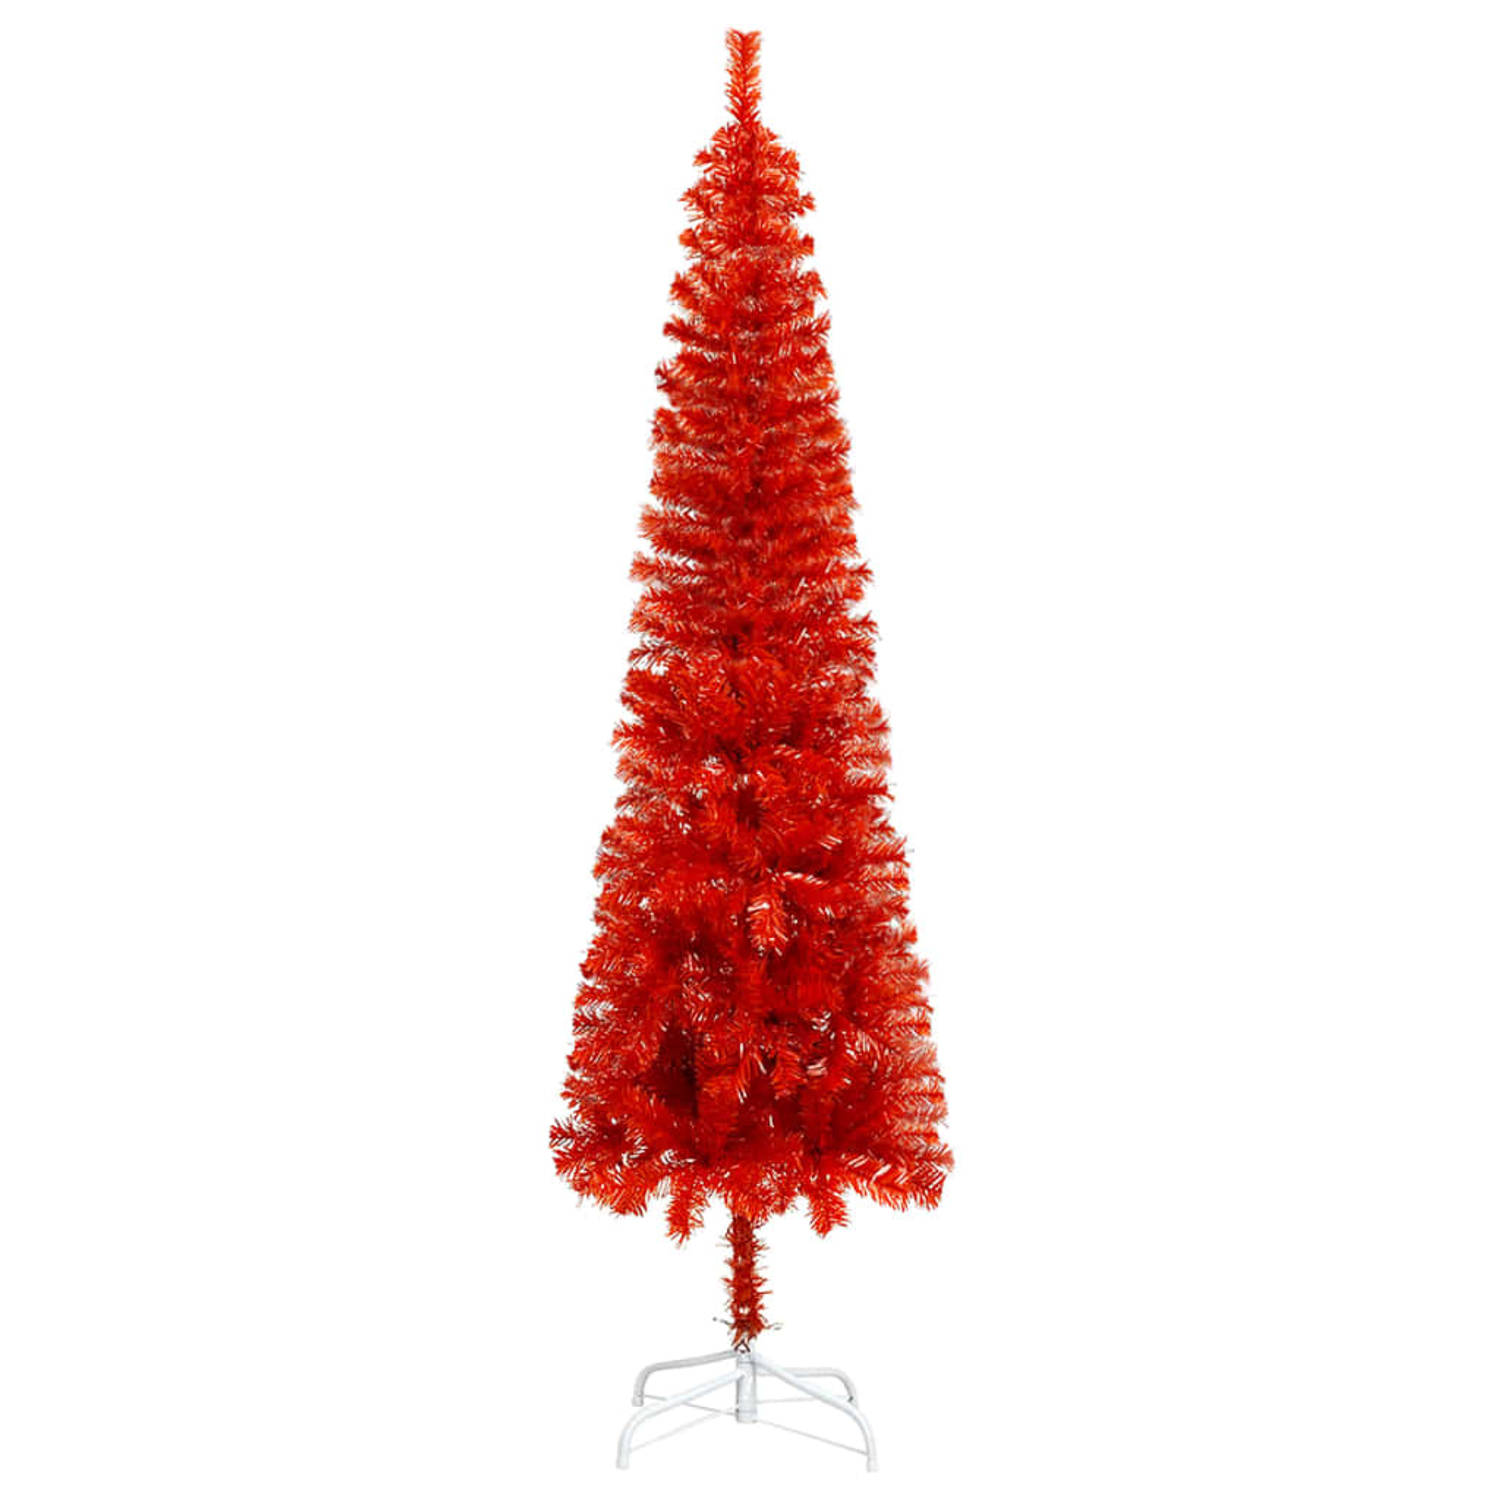 The Living Store Kerstboom smal 150 cm rood - Decoratieve kerstboom